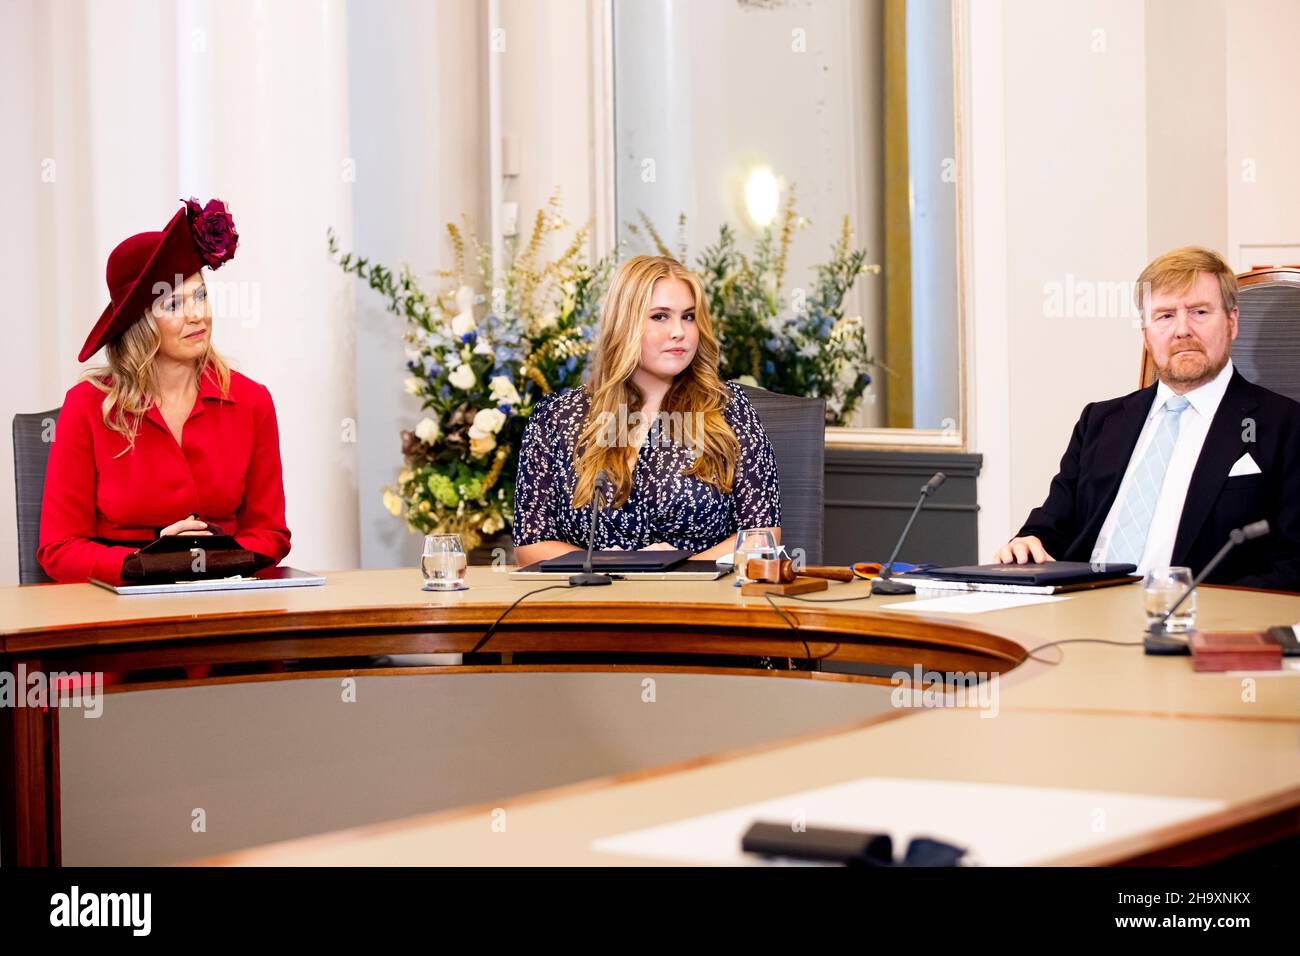 LA HAYA - Princesa Amalia de los Países Bajos se presenta en el Consejo de Estado en presencia del Rey Willem-Alexander y la Reina Maxima de los Países Bajos, 8 de diciembre de 2021. Foto: Patrick van Katwijk Foto de stock